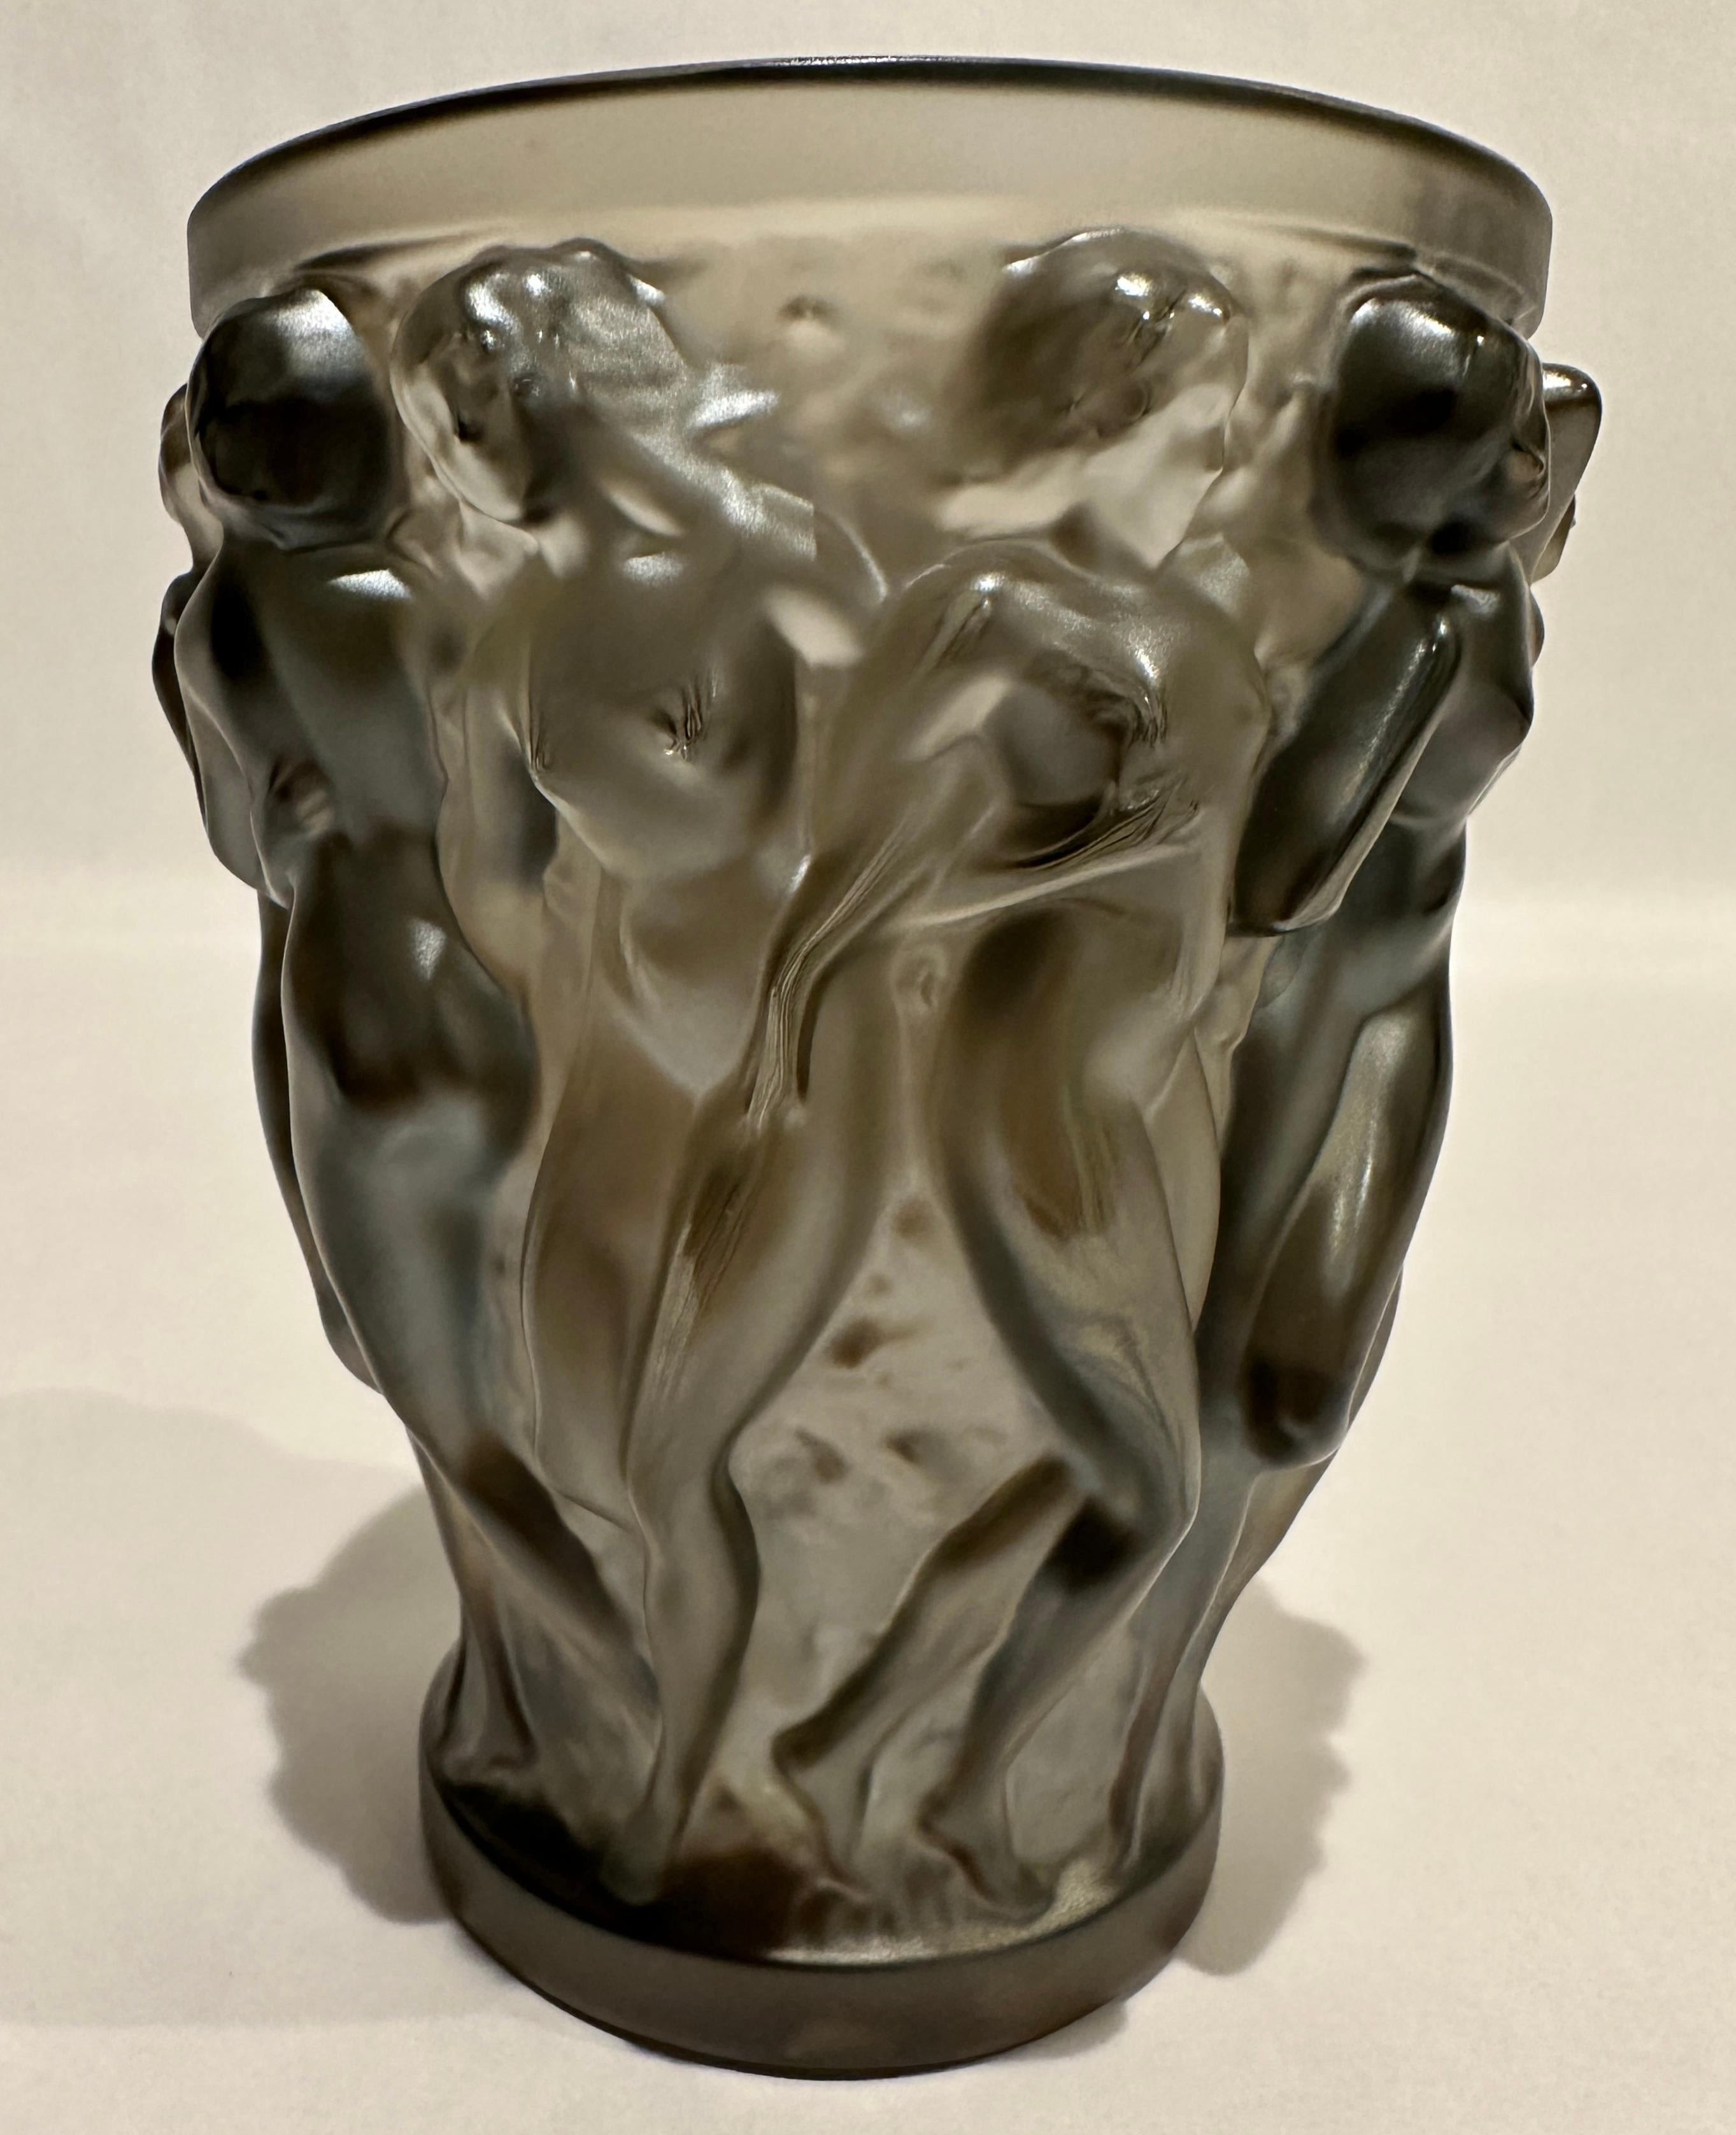 Vase en cristal Lalique Bacchantes en satin de couleur bronze, signé en bas. Label Lalique original transparent.

En 1927, l'imagination débordante et le génie créatif de René Lalique ont conduit à la création du vase Bacchantes. Comme une